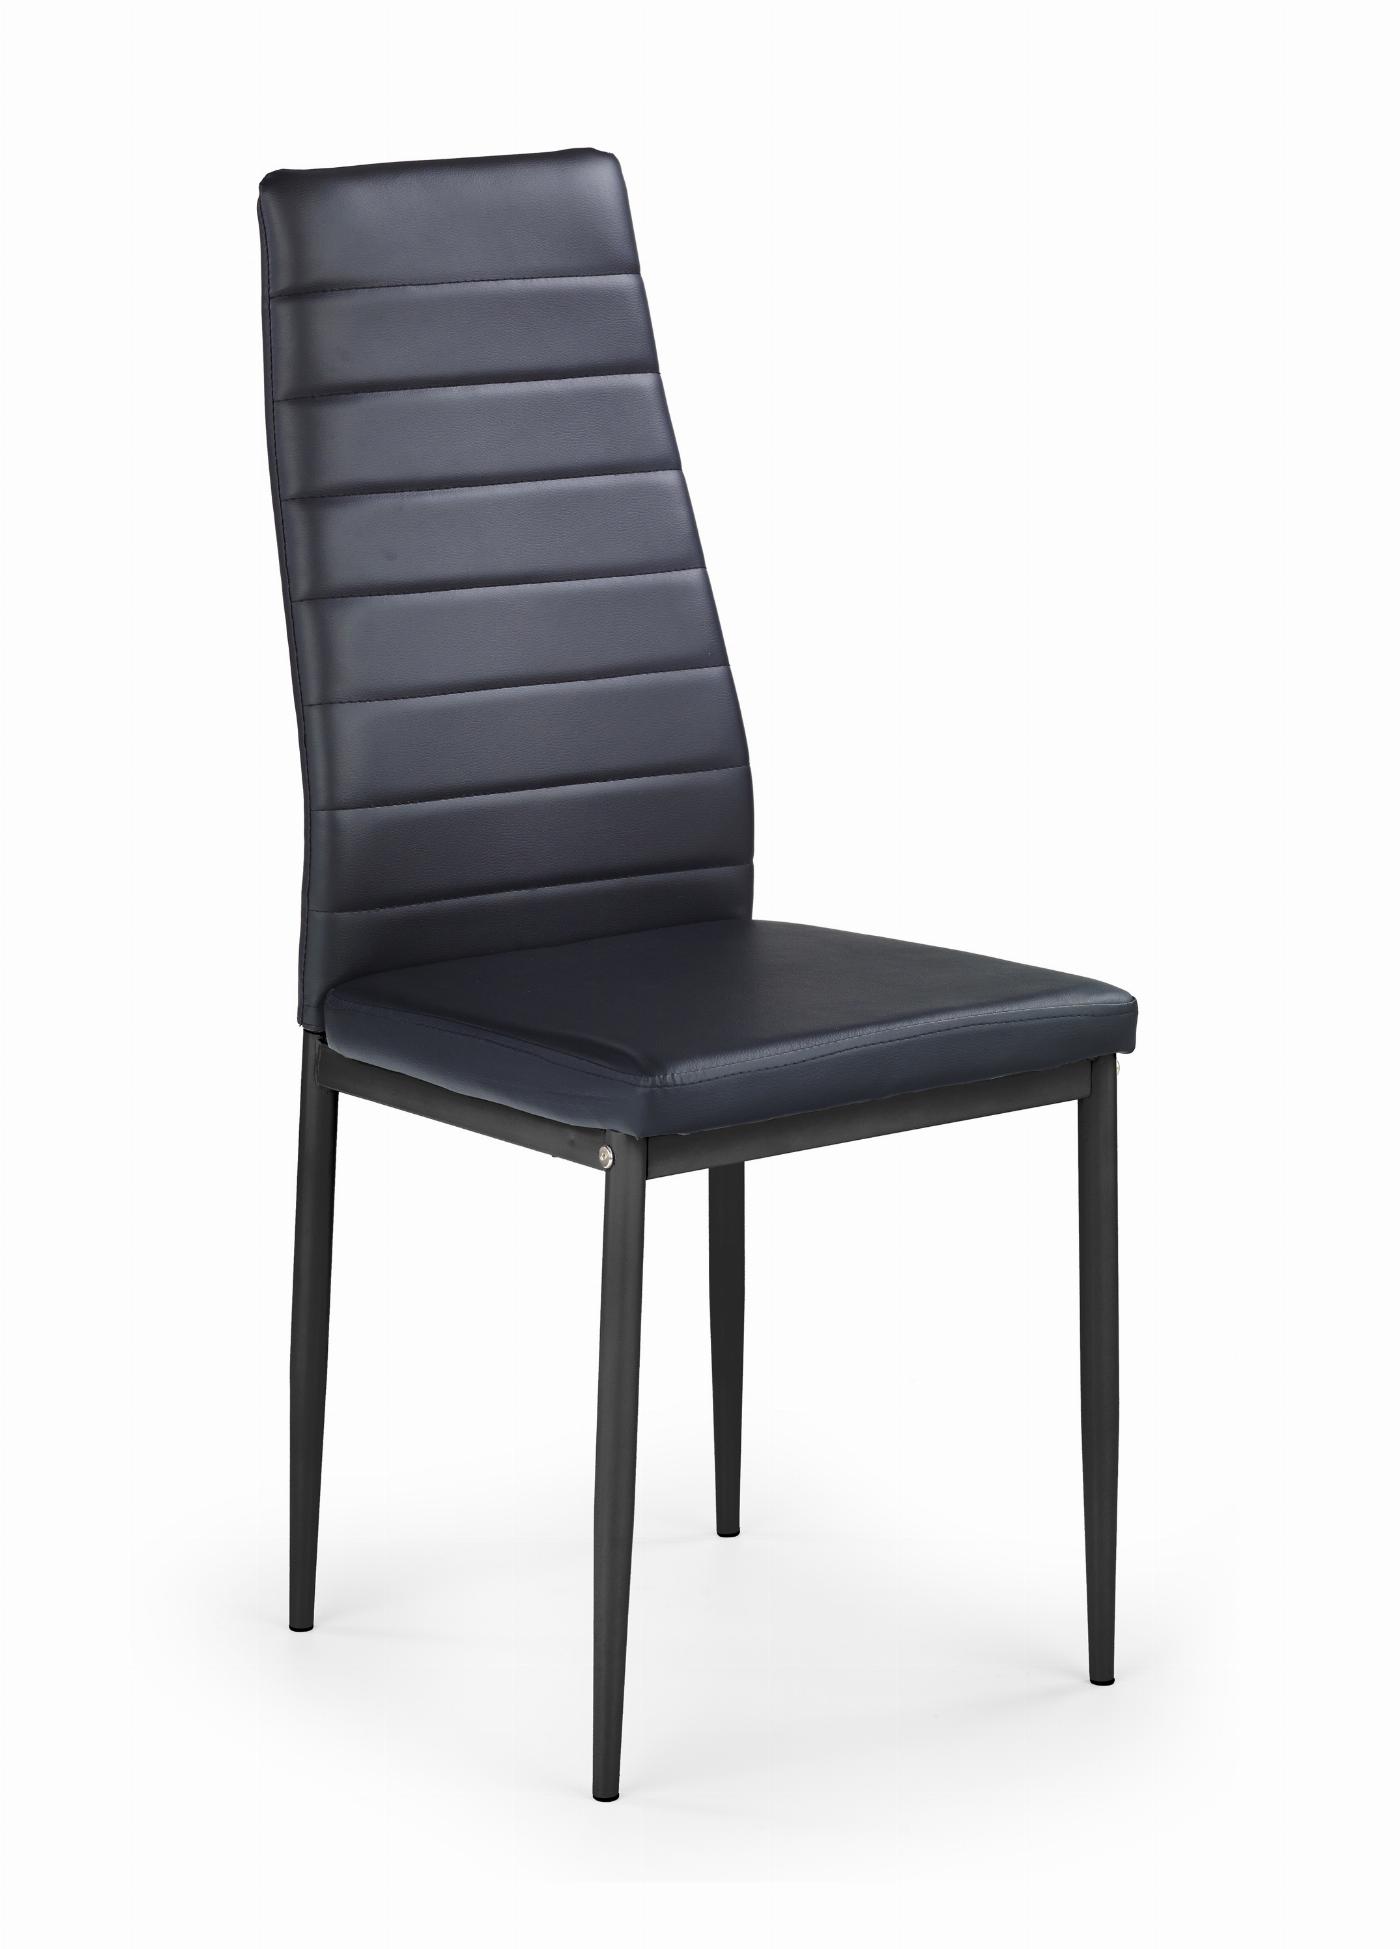 K70 krzesło czarny (1p=4szt)